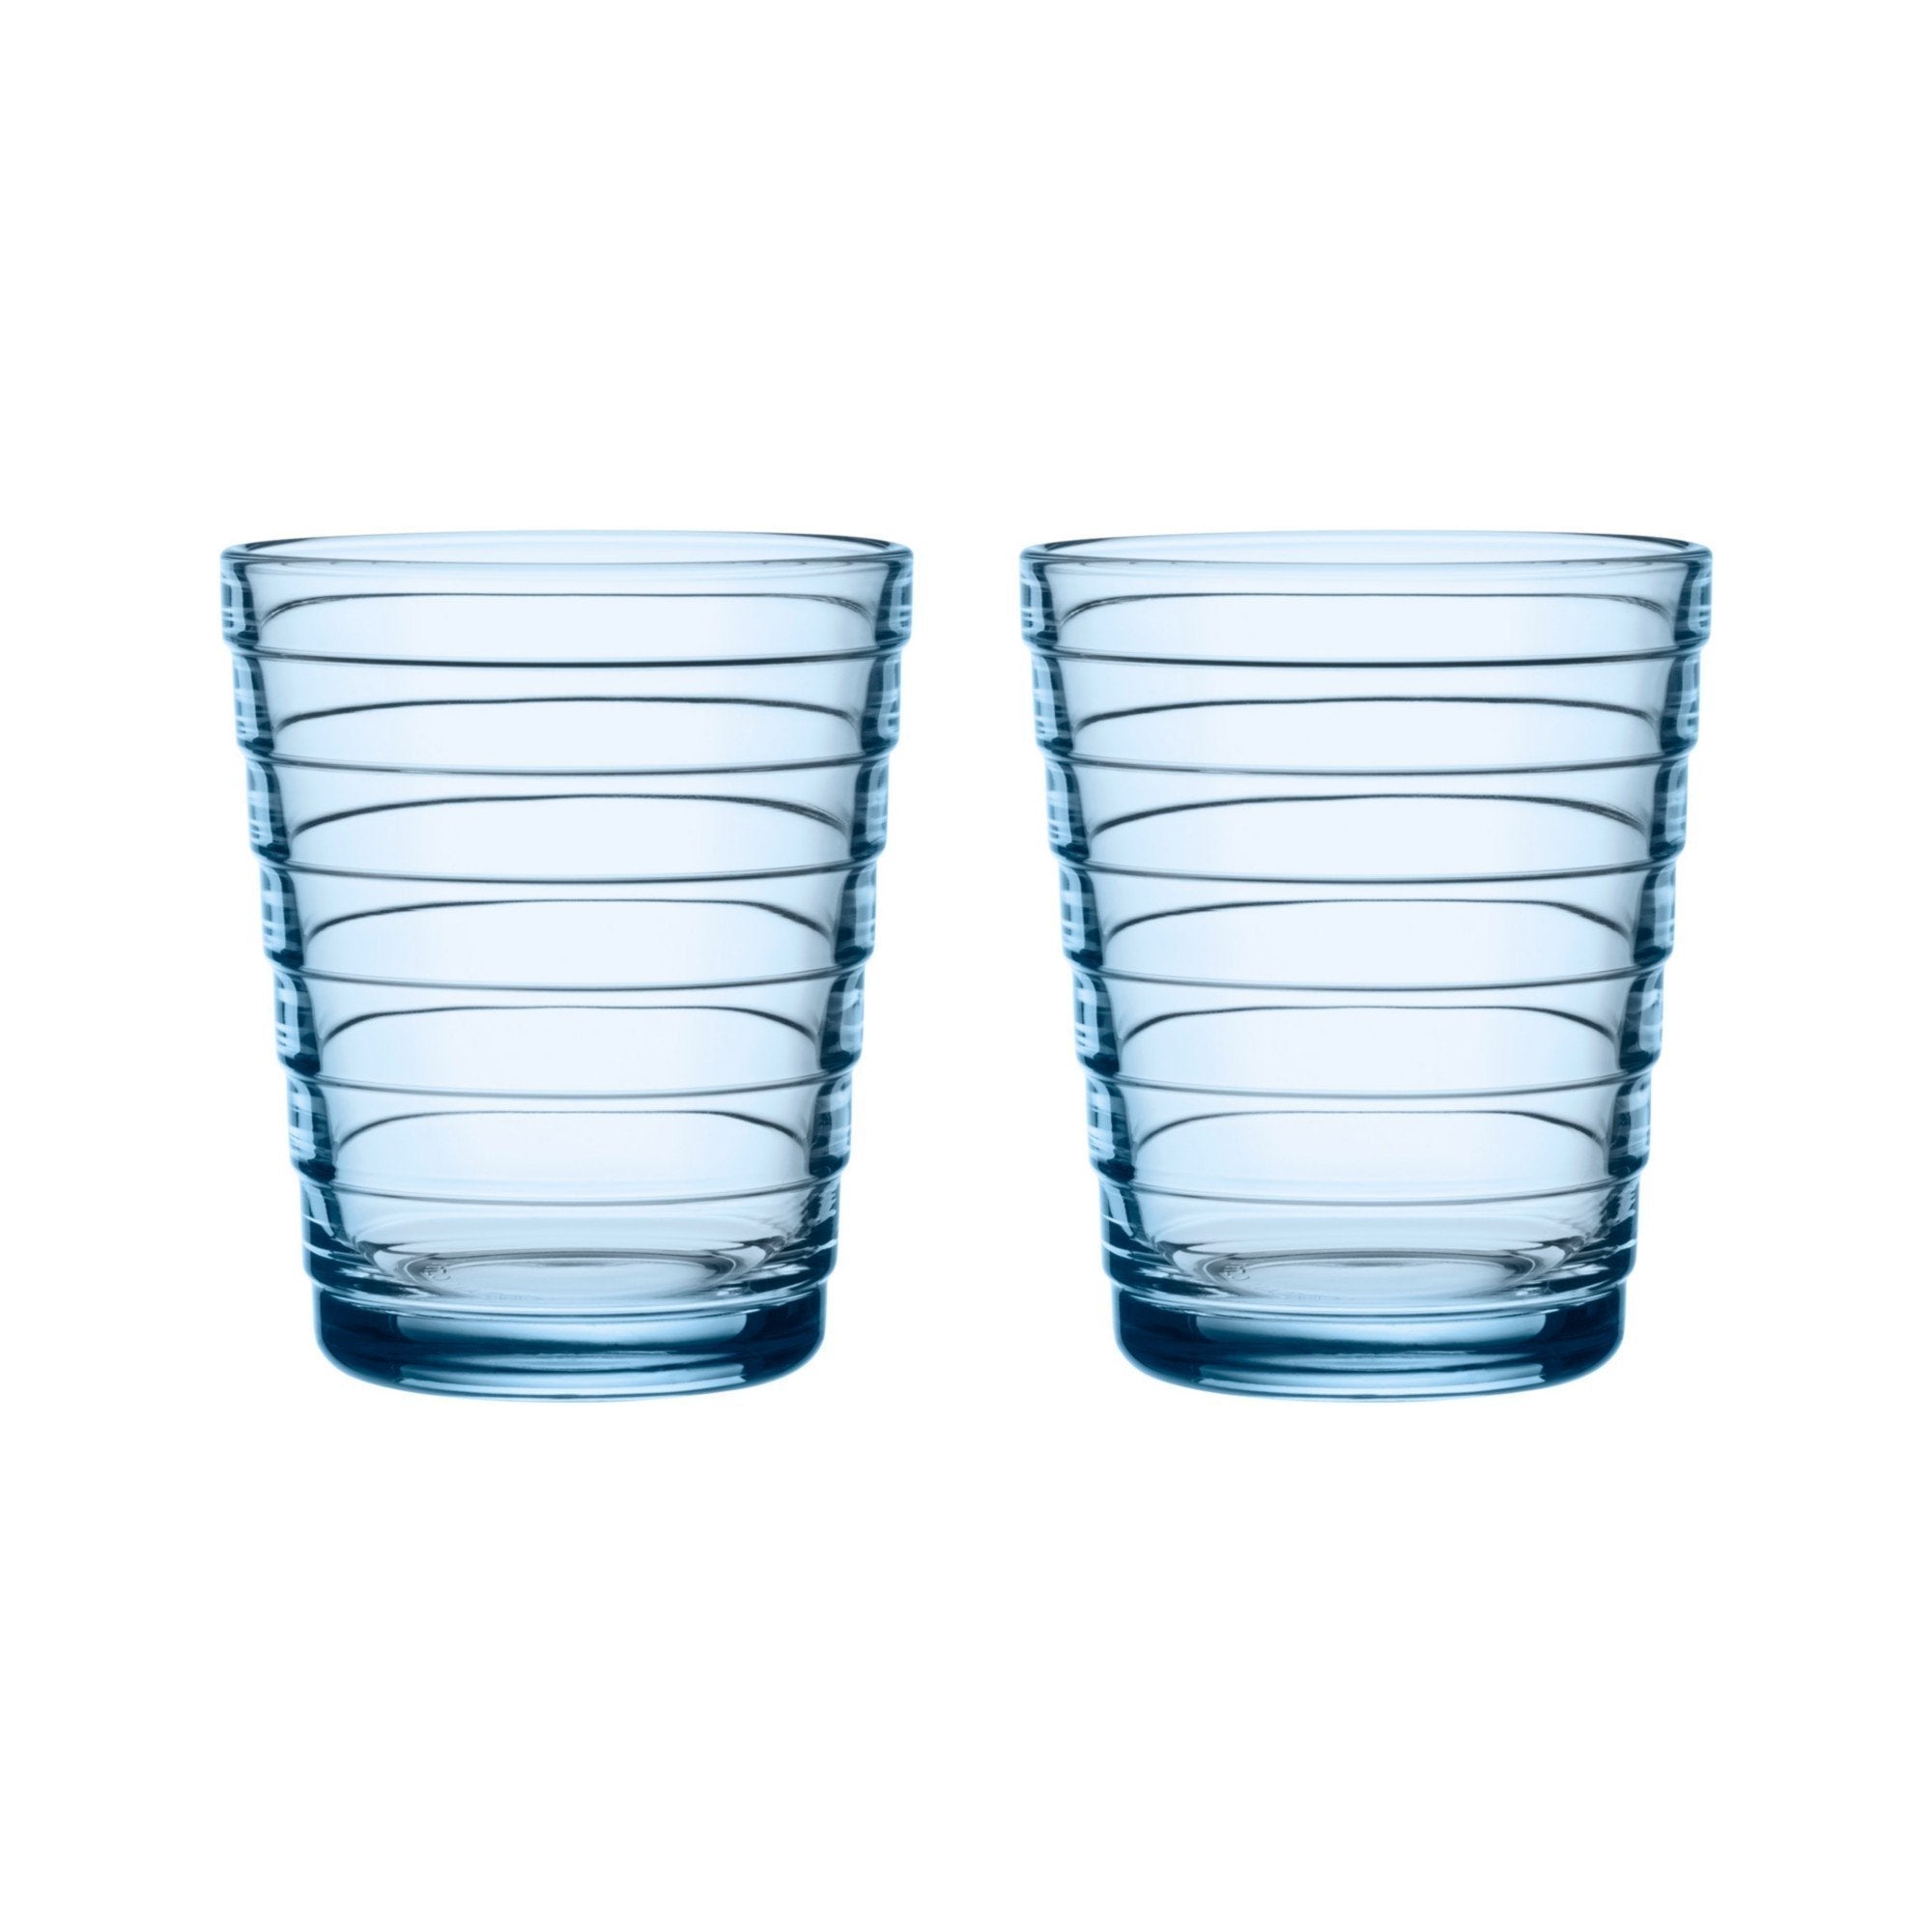 Iittala Aino aalto dricka glas aqua 22cl, 2 st.